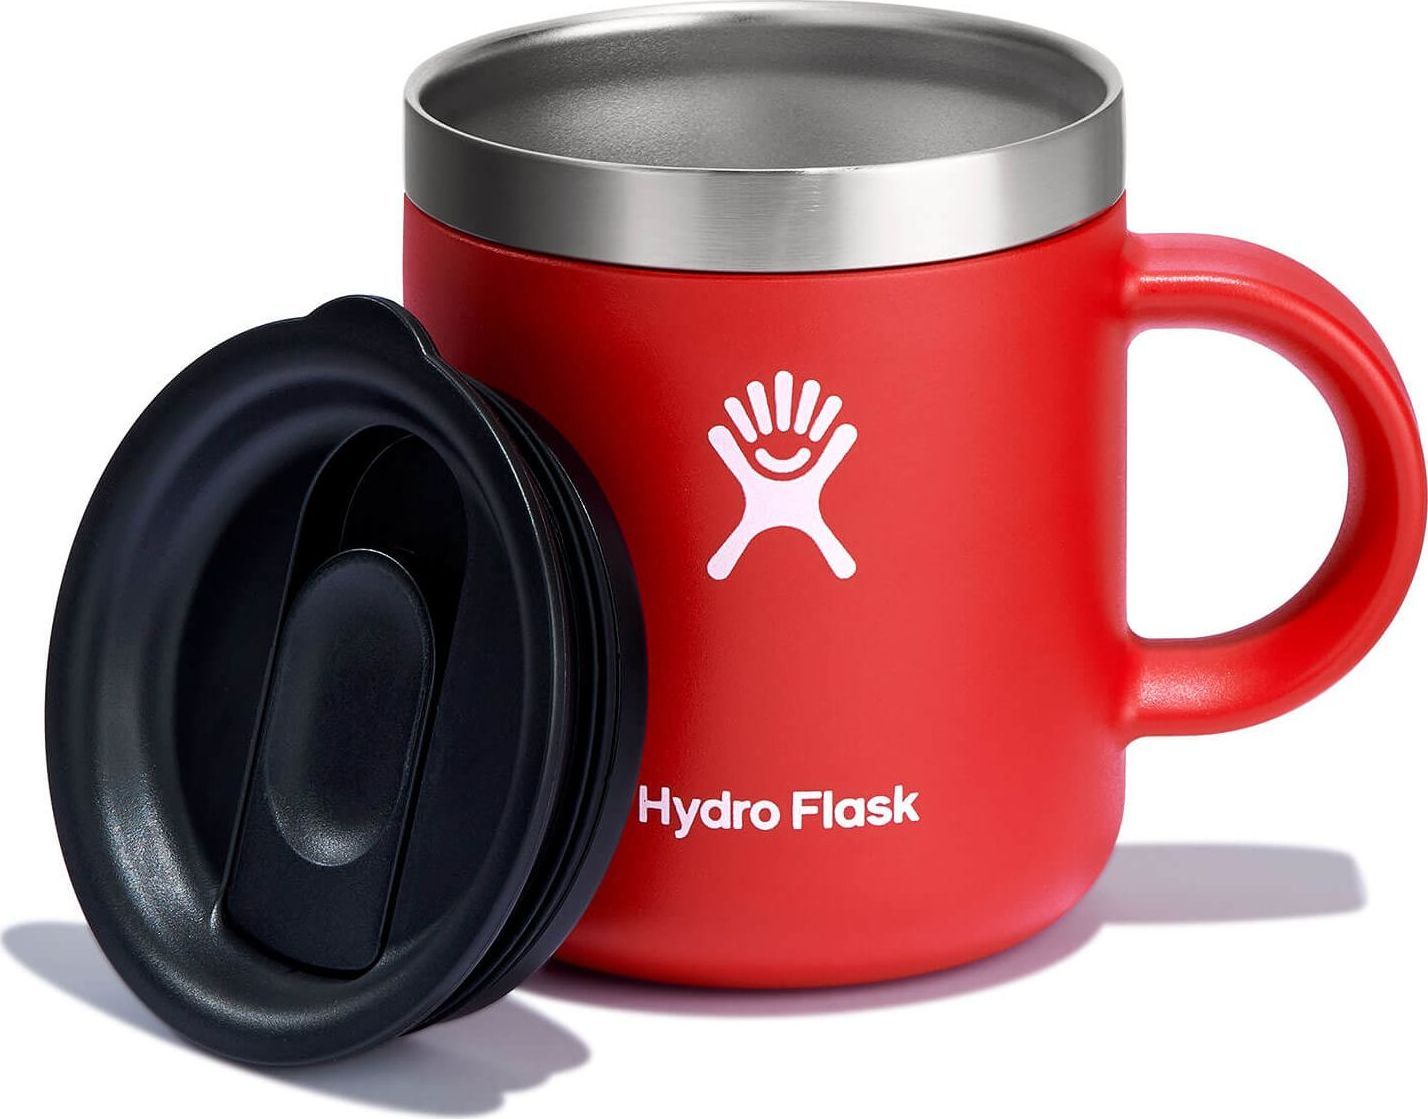 https://www.fjellsport.no/assets/blobs/hydro-flask-coffee-mug-177-ml-goji-b1eddb8291.jpeg?preset=medium&dpr=2